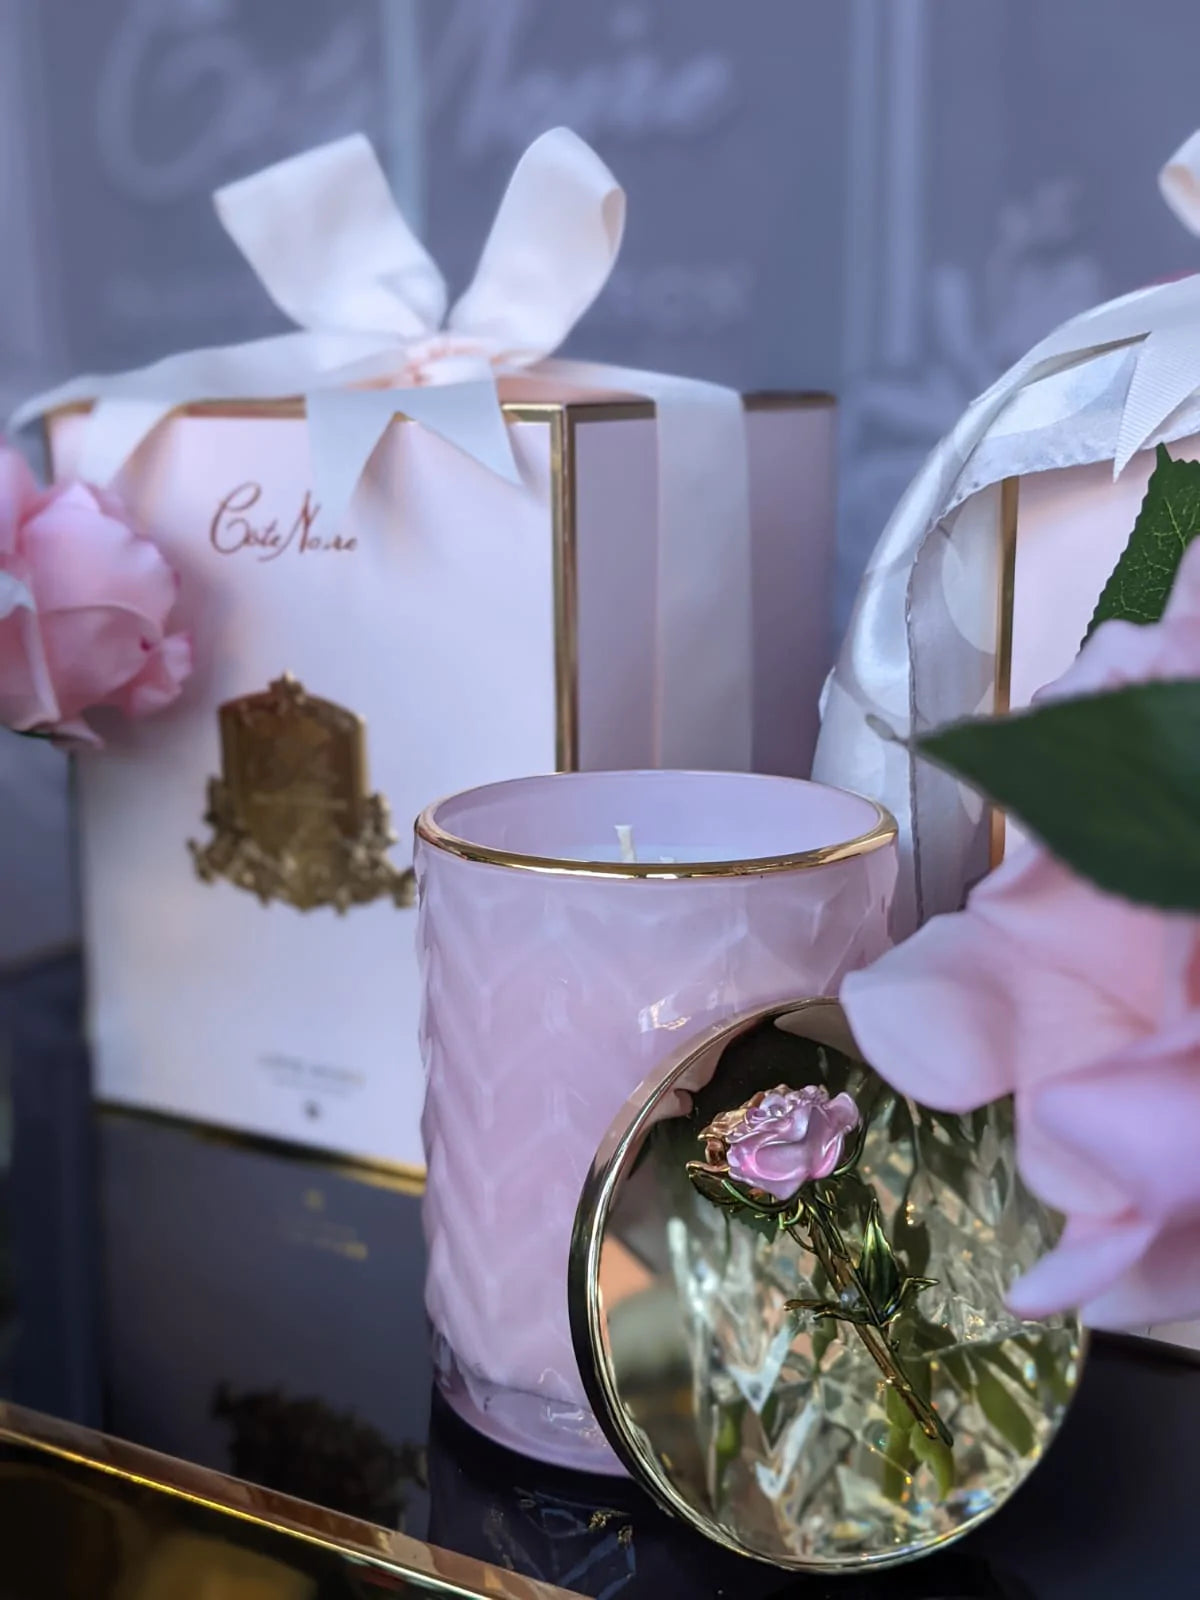 rosa herringbone duftkerze und geschenkbox auf blauem glastisch. golddeckel für besseren blick auf rose angelehnt.